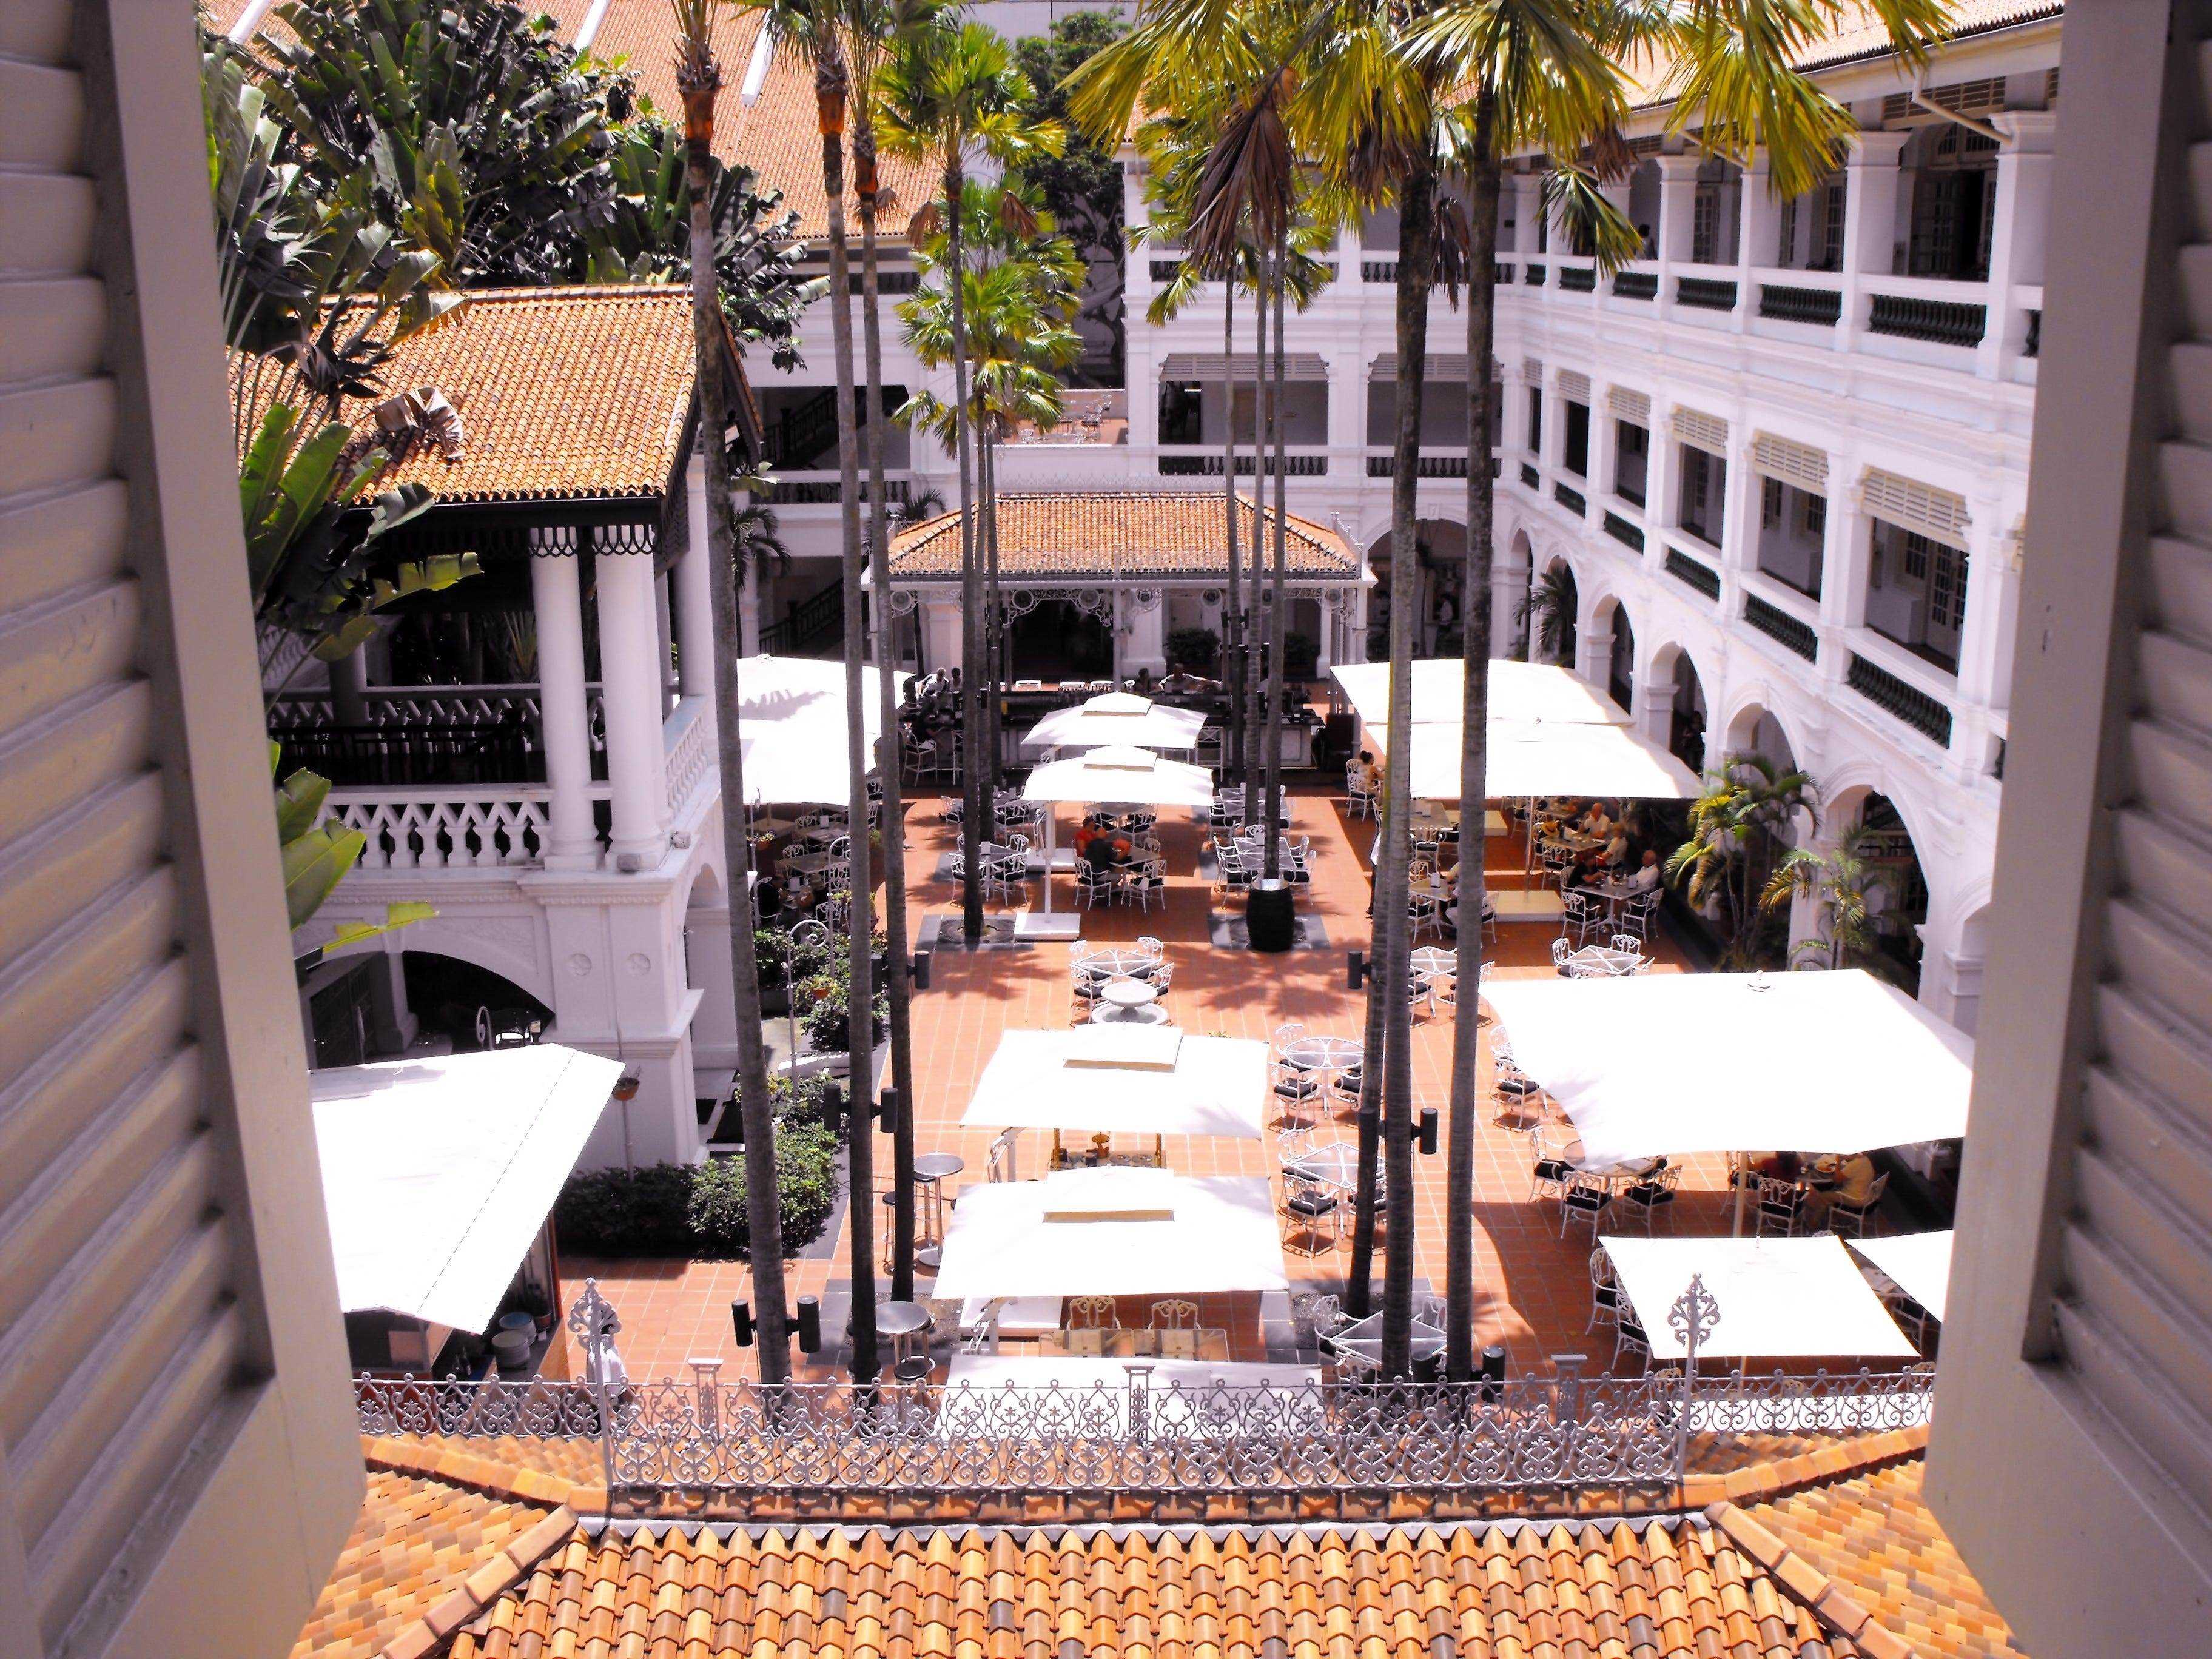 Raffles Hotel in Singapur, Blick auf den Innenhof